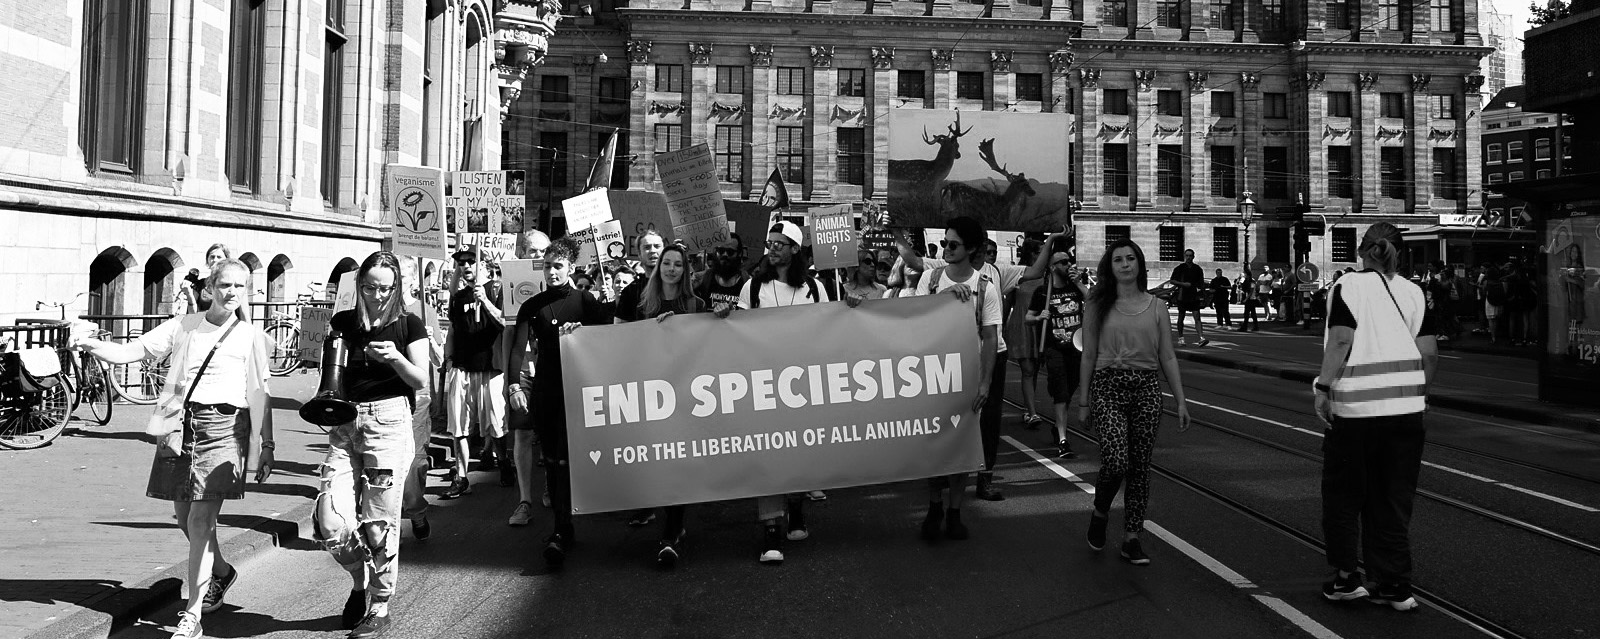 Speciesisme: Discriminatie op Basis van Soort